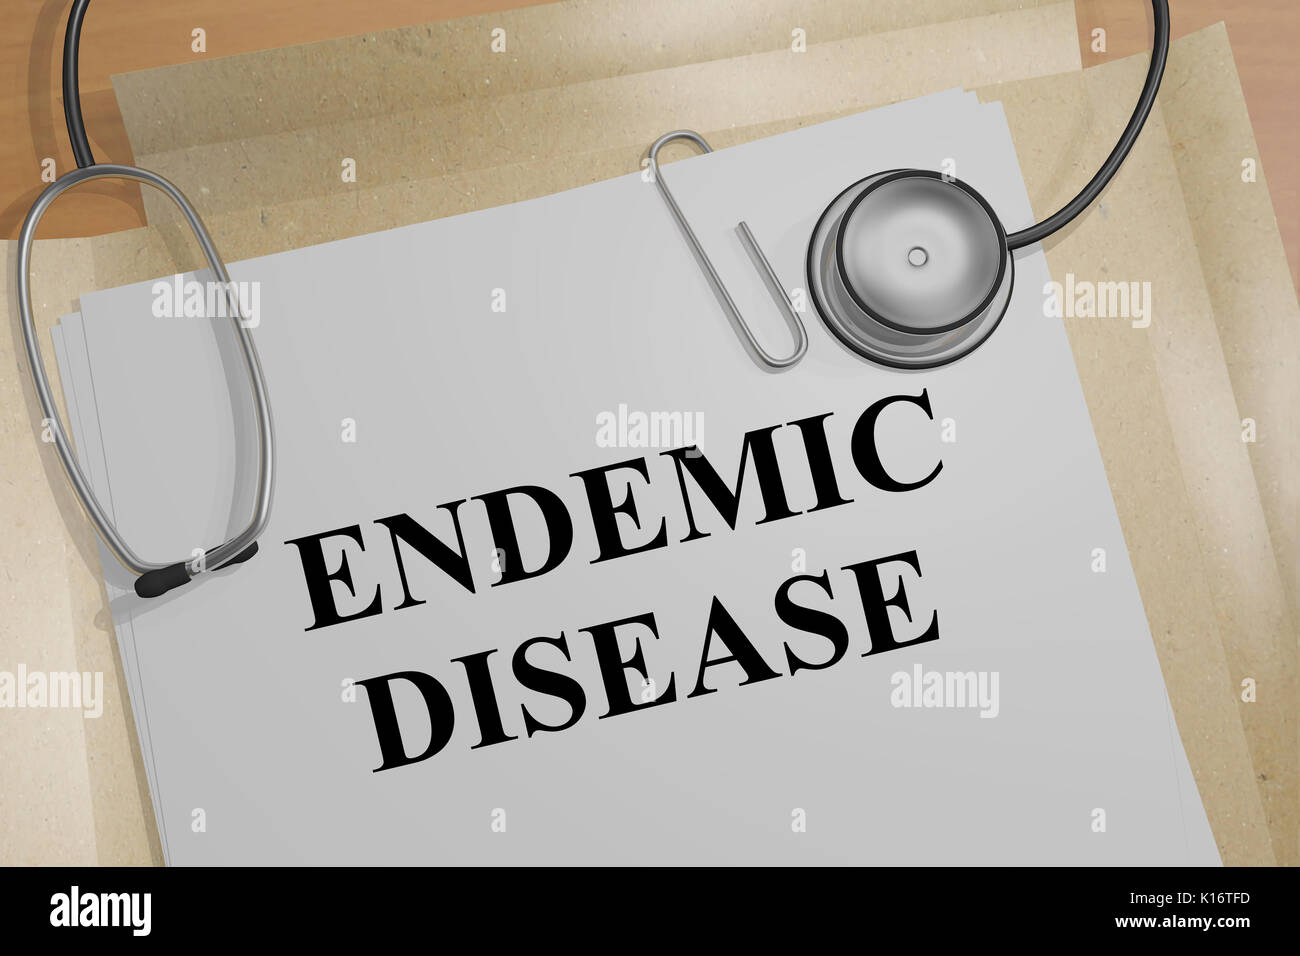 3D illustrazione della "malattia endemica" titolo su un documento medico Foto Stock